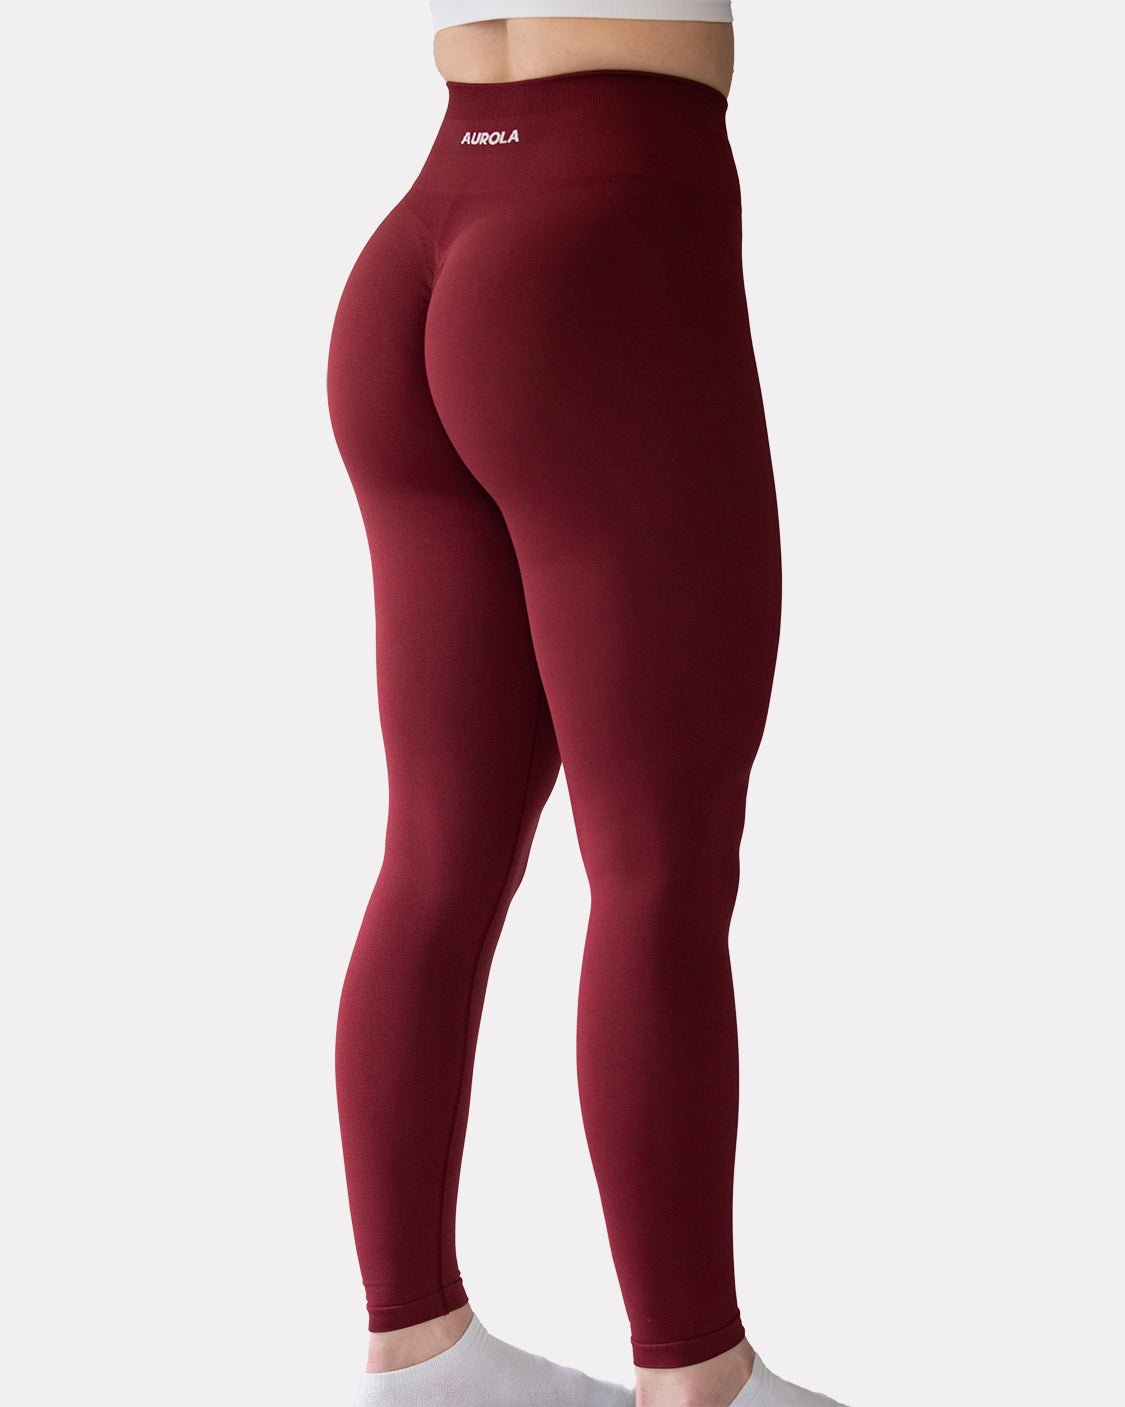 AUROLA. Alphalete Dupe, Pants & Jumpsuits, Aurola Workout Leggings  Dandelion Brown Alphalete Dupe